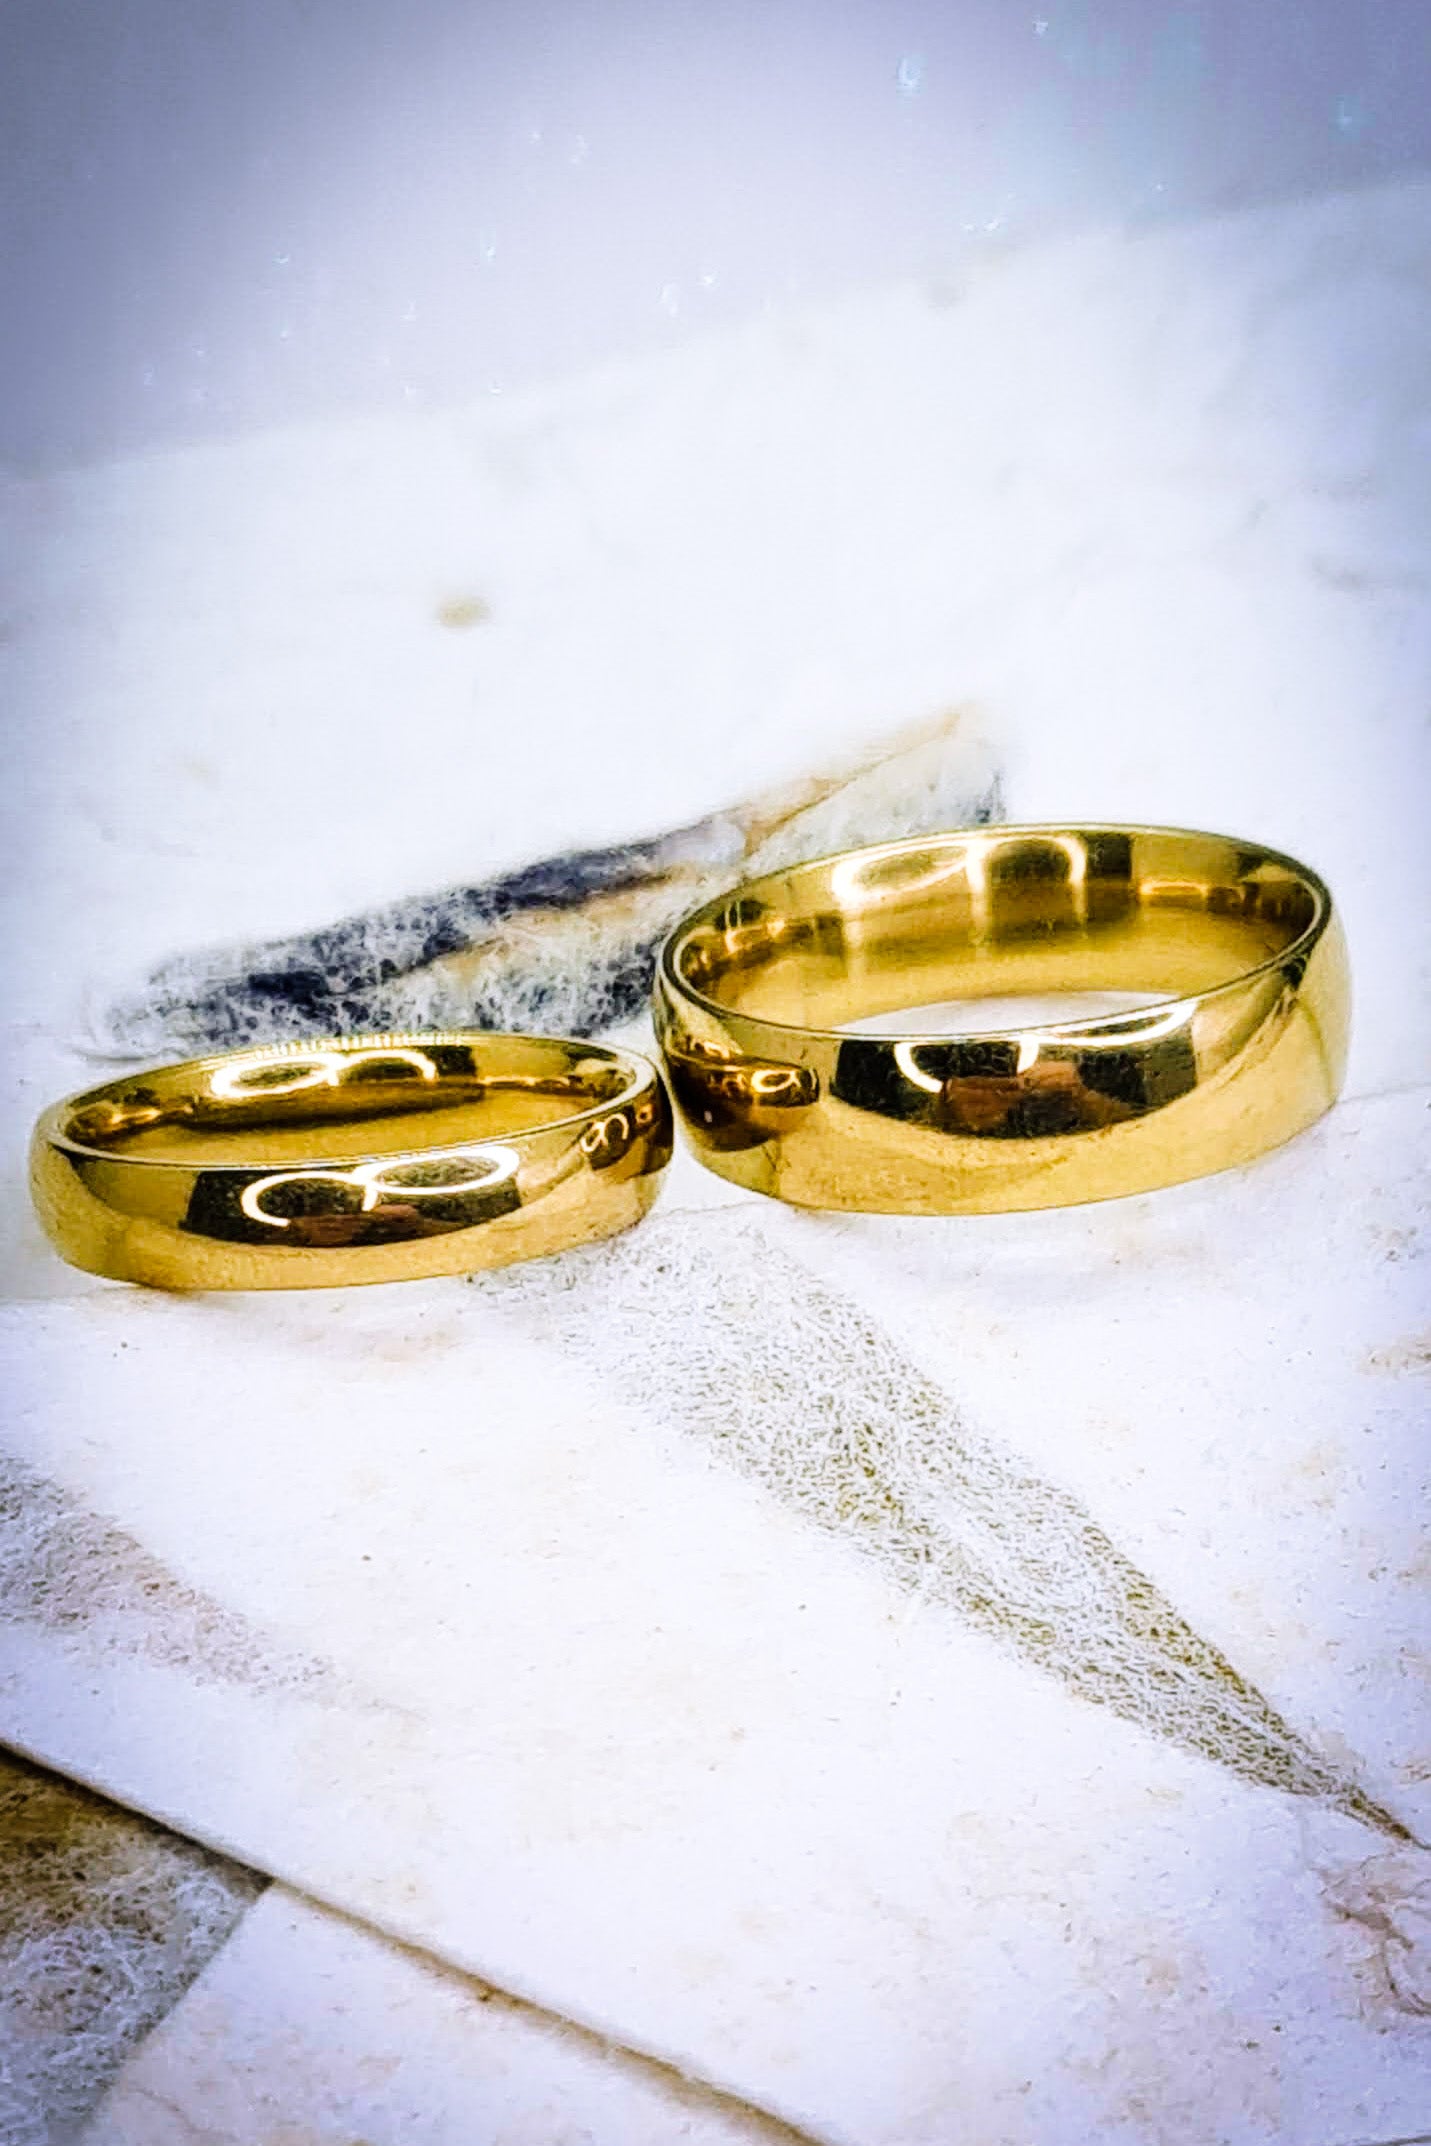 Anillos tipo alianza de matrimonio o pareja en acero inoxidable dorado y ancho de 4mm y 6mm. Se incluye grabado de nombres y fecha importante gratis. Posan sobre bolsa de cartón colores pastel.